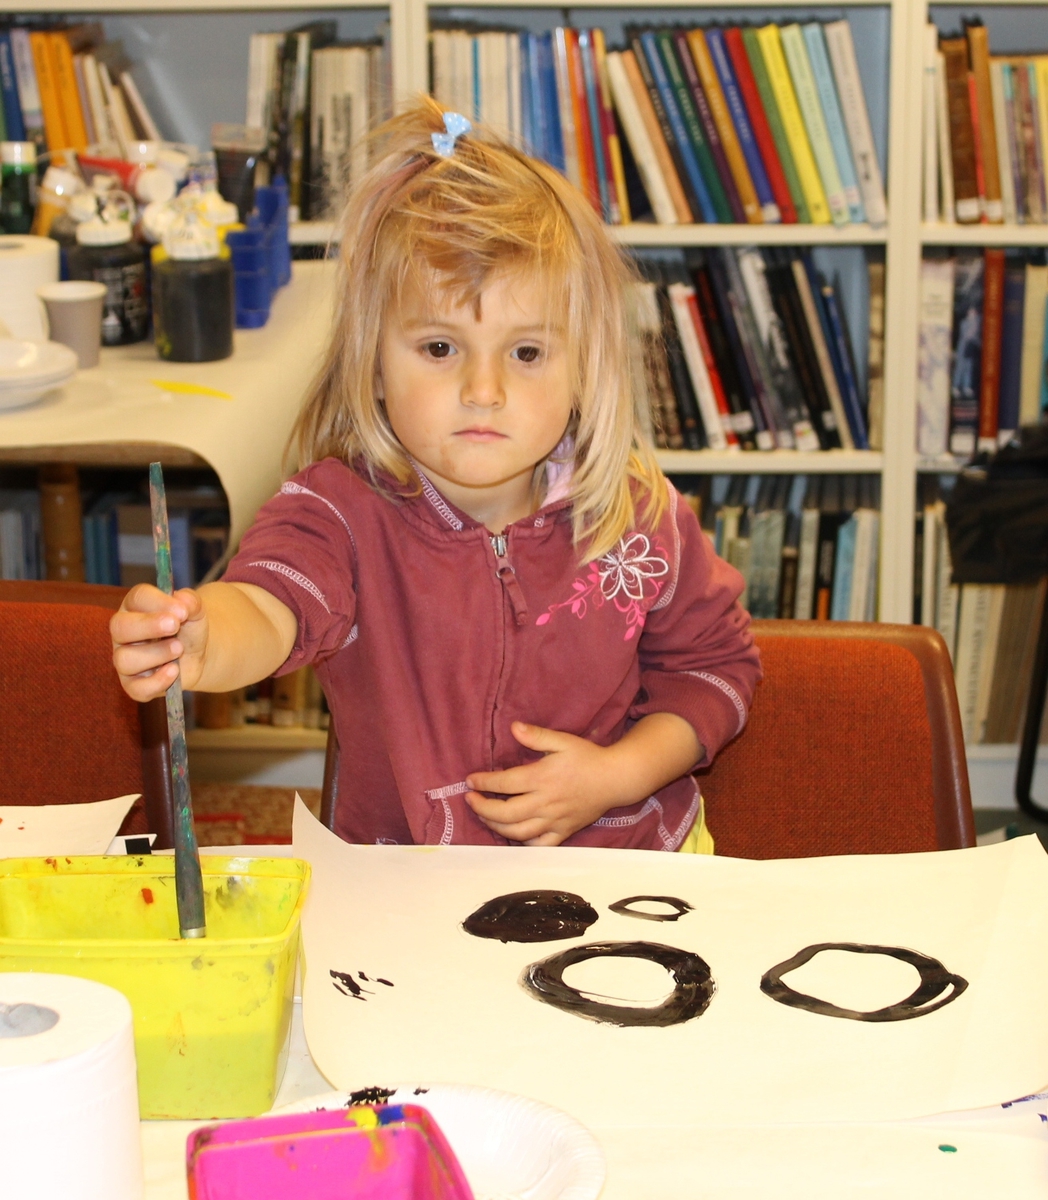 Aktivitetsdag på Berg-Kragerø Museum 8.10.2014. Høstferien.
Barn leiker,  maler, kaster bocca, kaster ringer, og hopper i sekk.